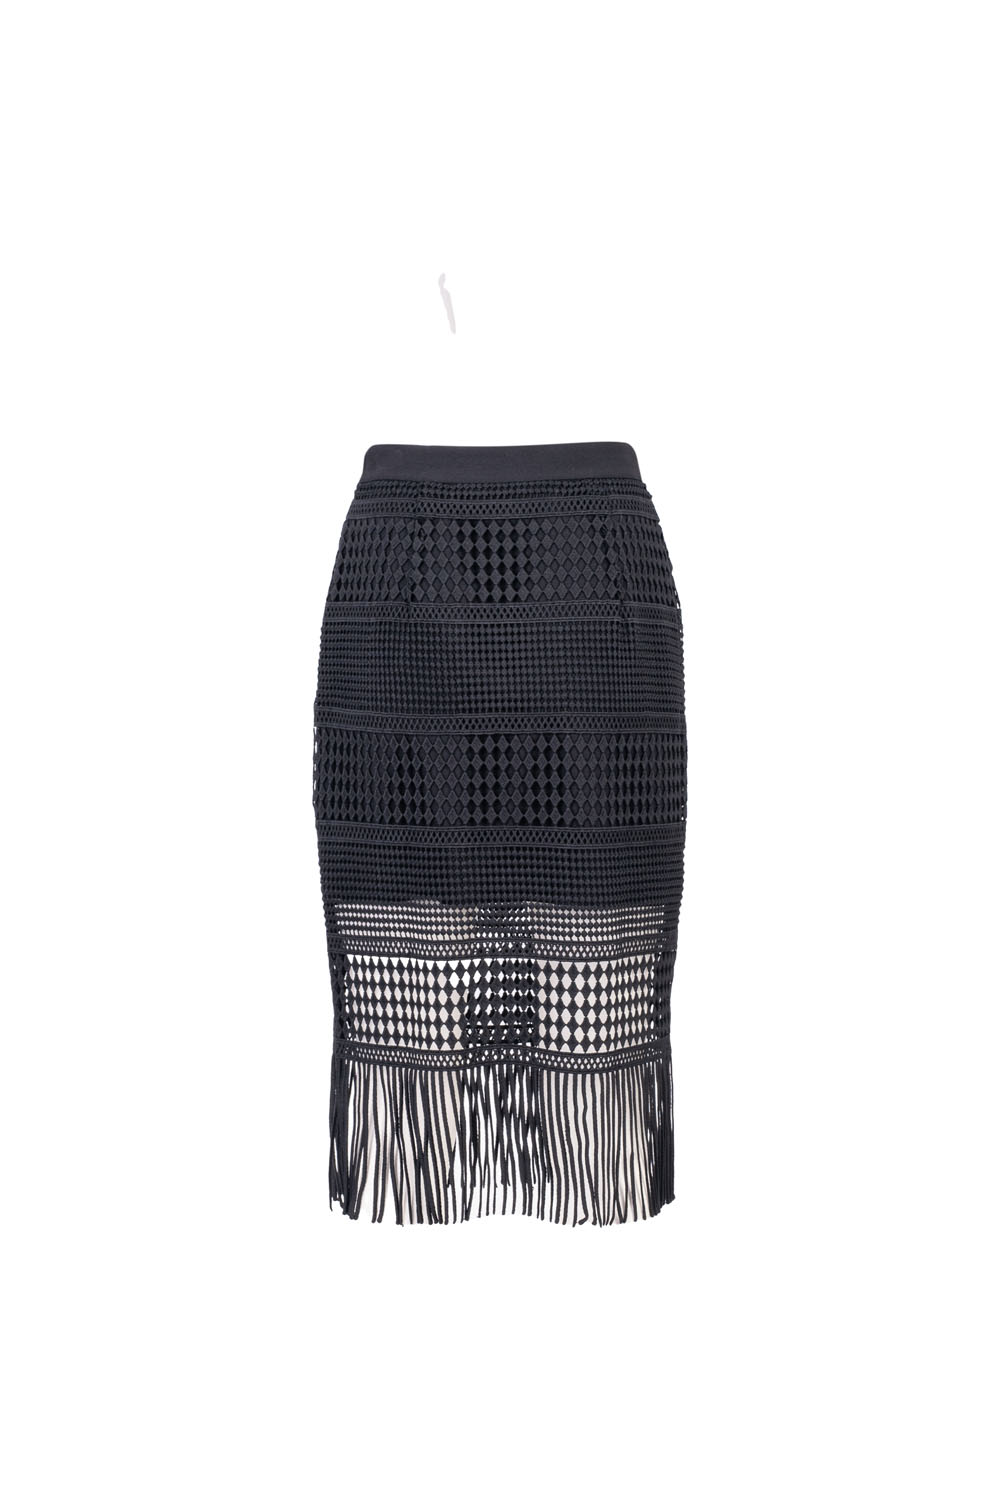 Mini Skirt with Decorative Fringe Overlay and Elasticated Waistband